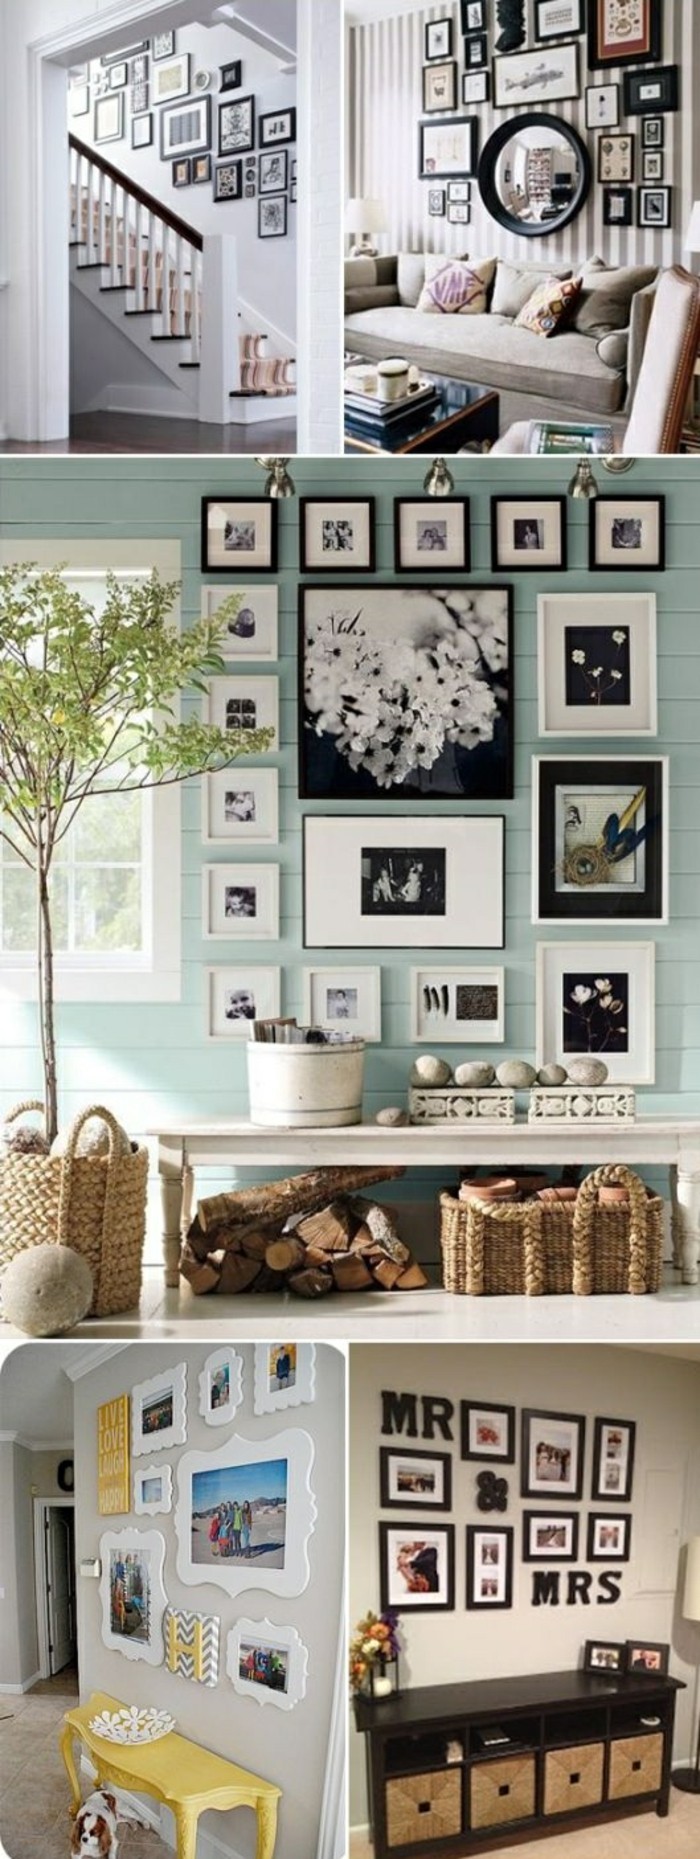 cadre photo-mur-tree-escalier canapé-armoire-tressée panier